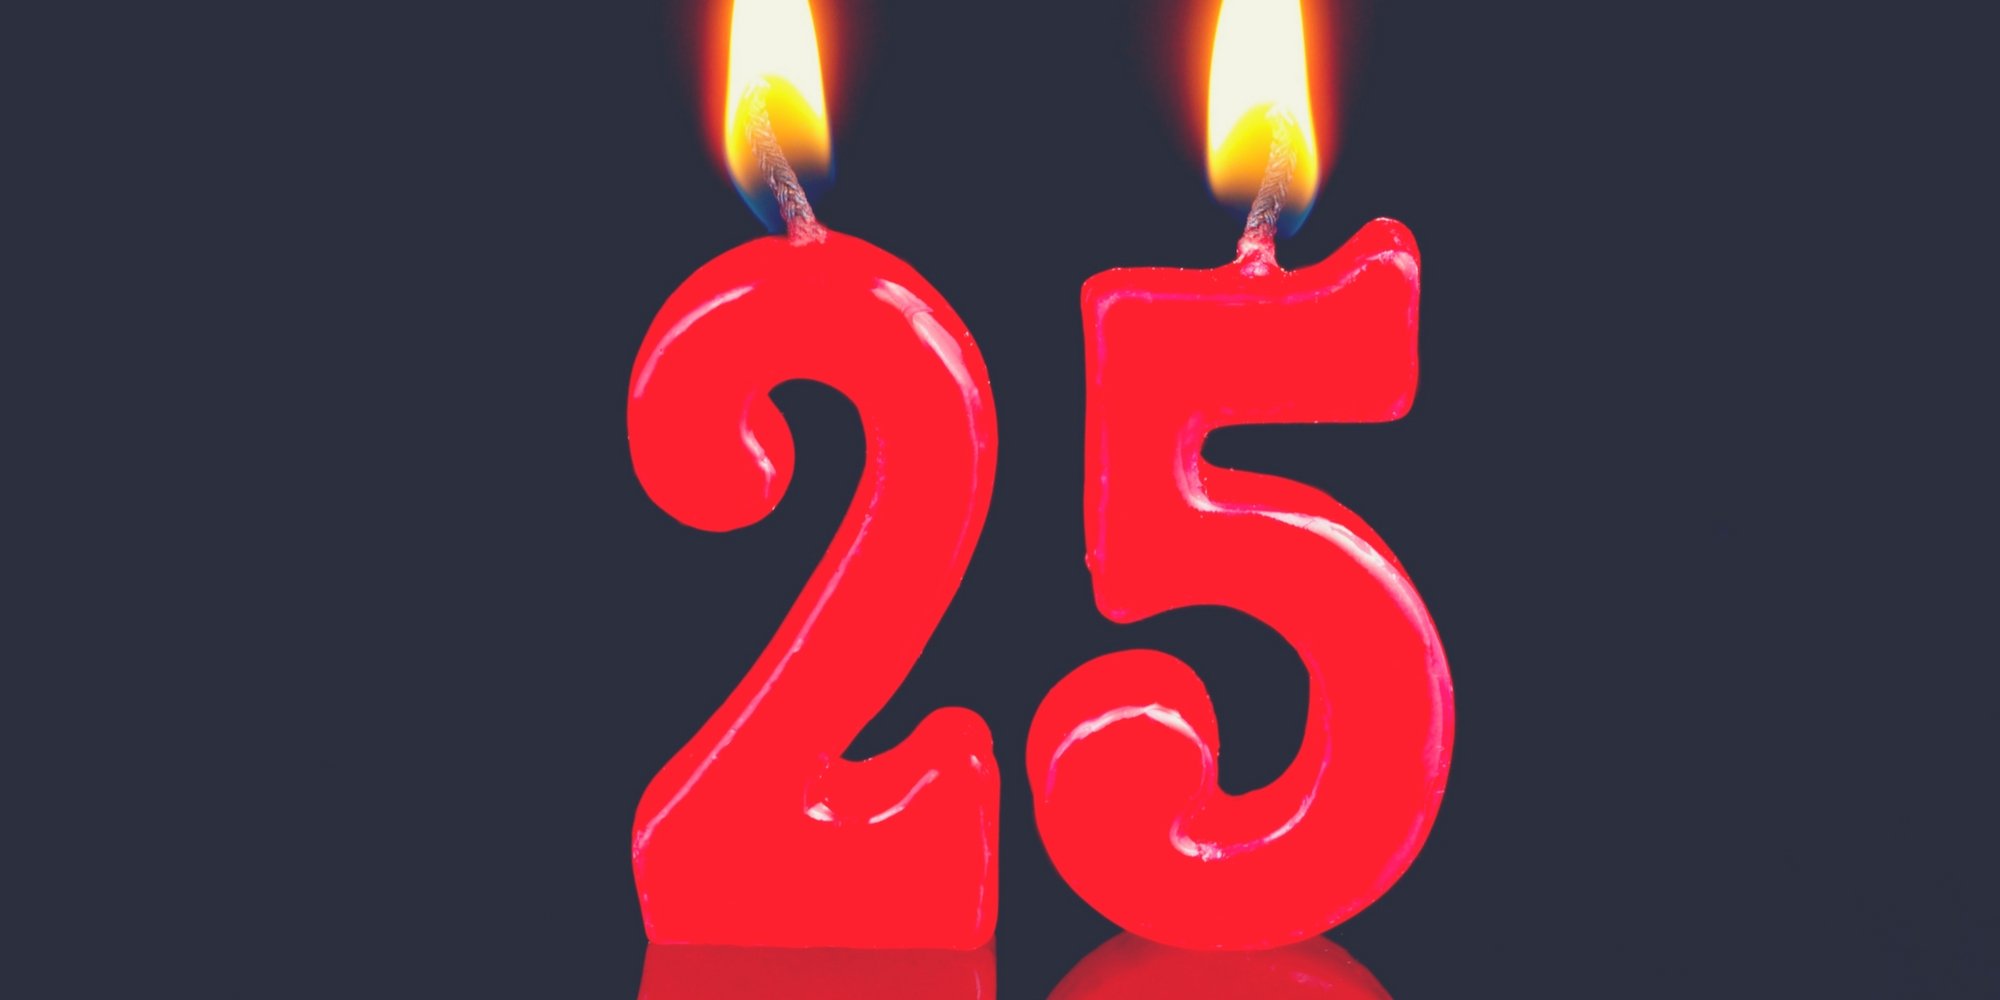 С 15 20 лет 25. С днем рождения 25. С днём рождения меня 25 лет. С юбилеем 25 лет. Надпись с юбилеем 25 лет.